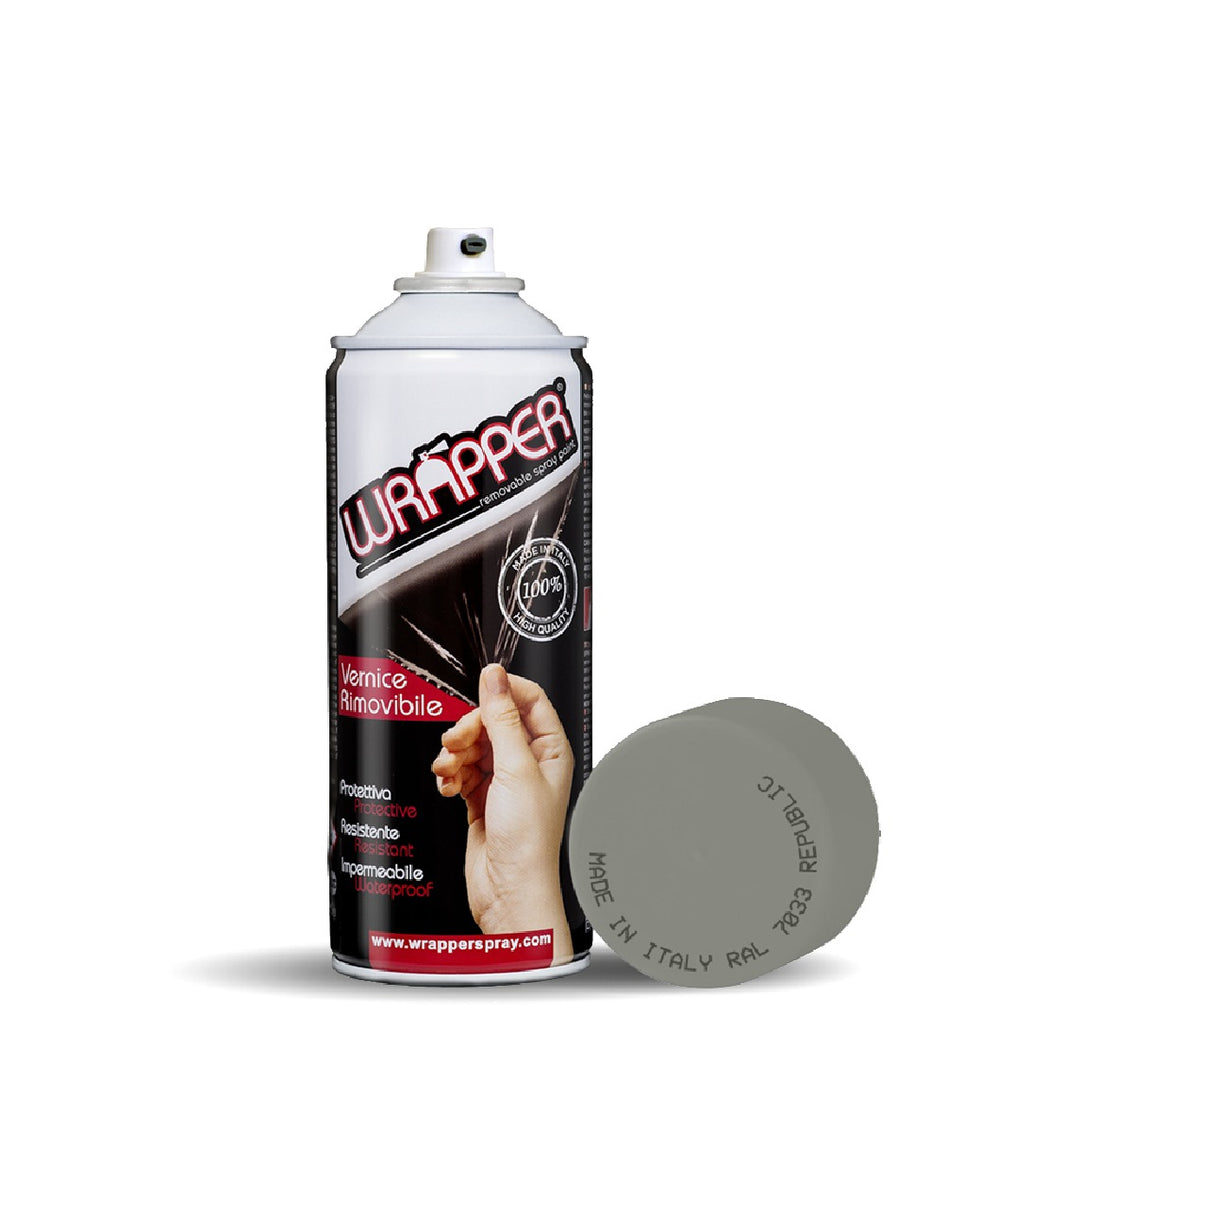 Wrapper pellicola spray rimovibile, 400 ml - Republic - Ral 7033